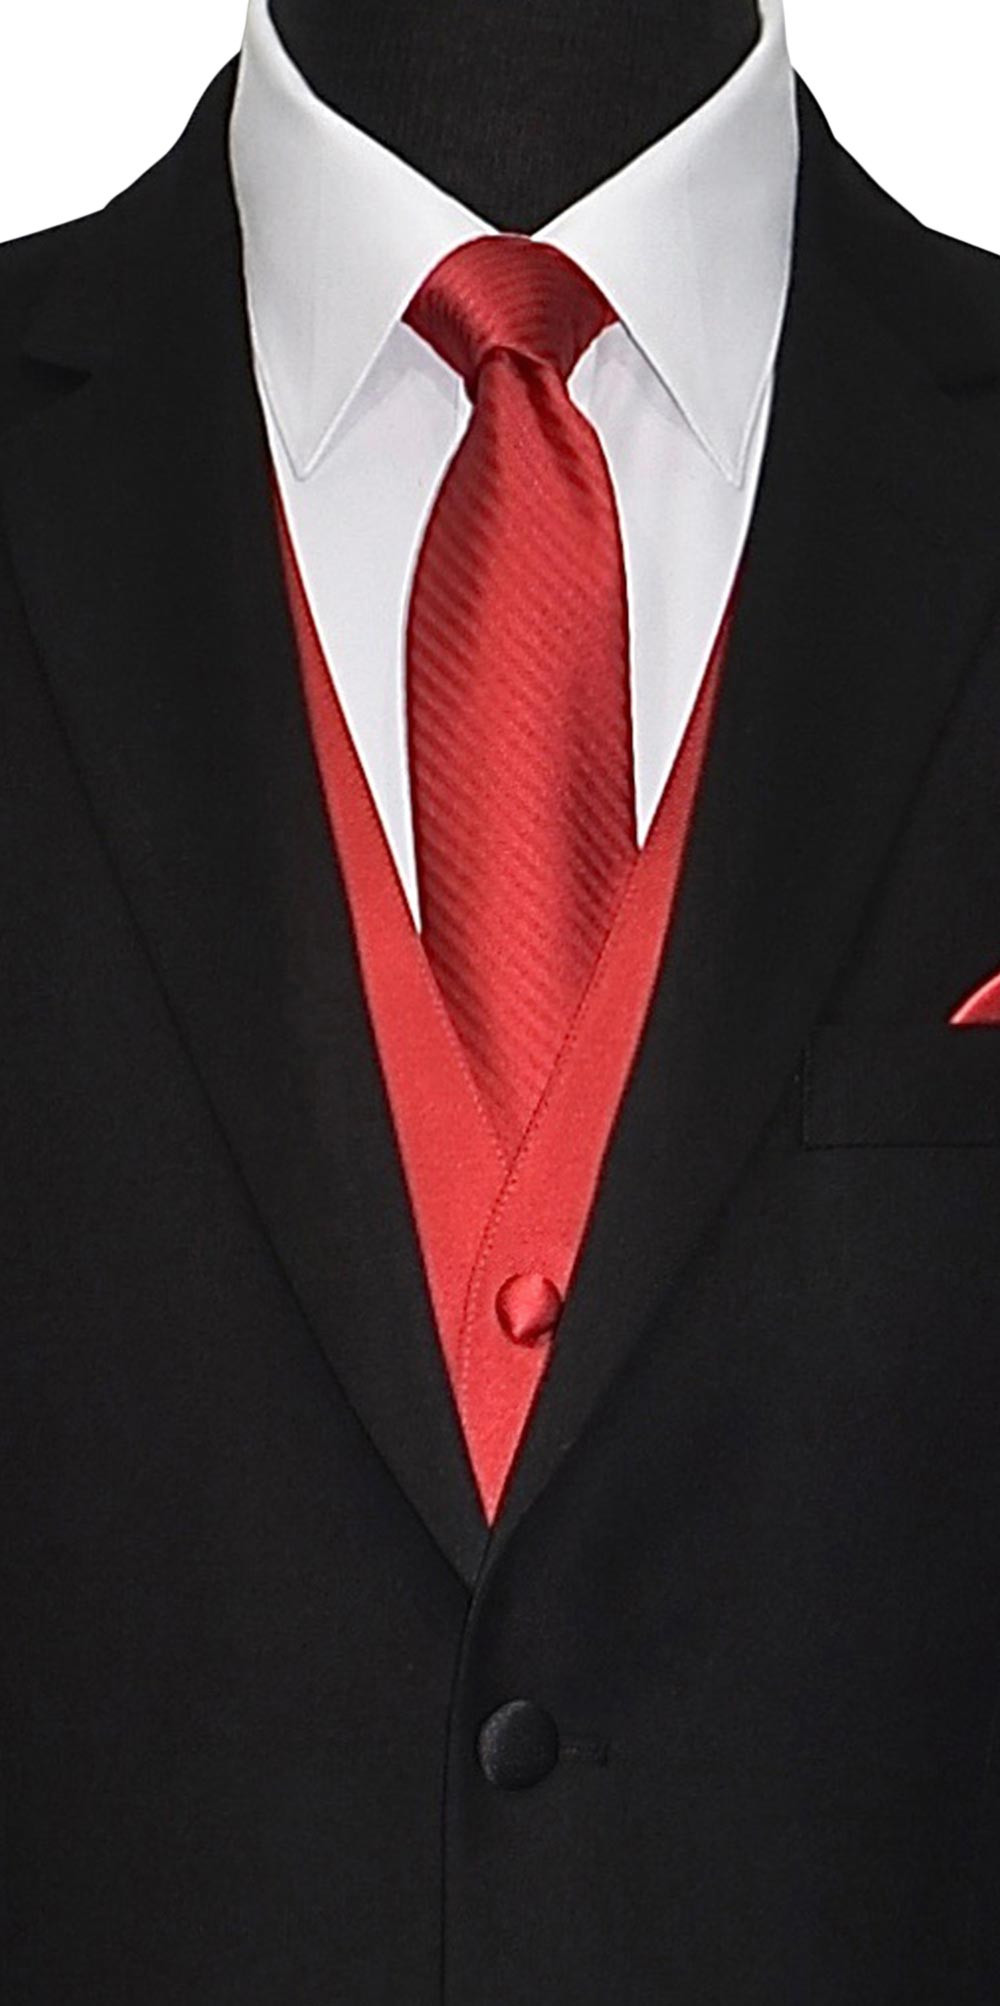 black suit, red tie | Black suit men, Black suit white shirt, Black suit  red tie